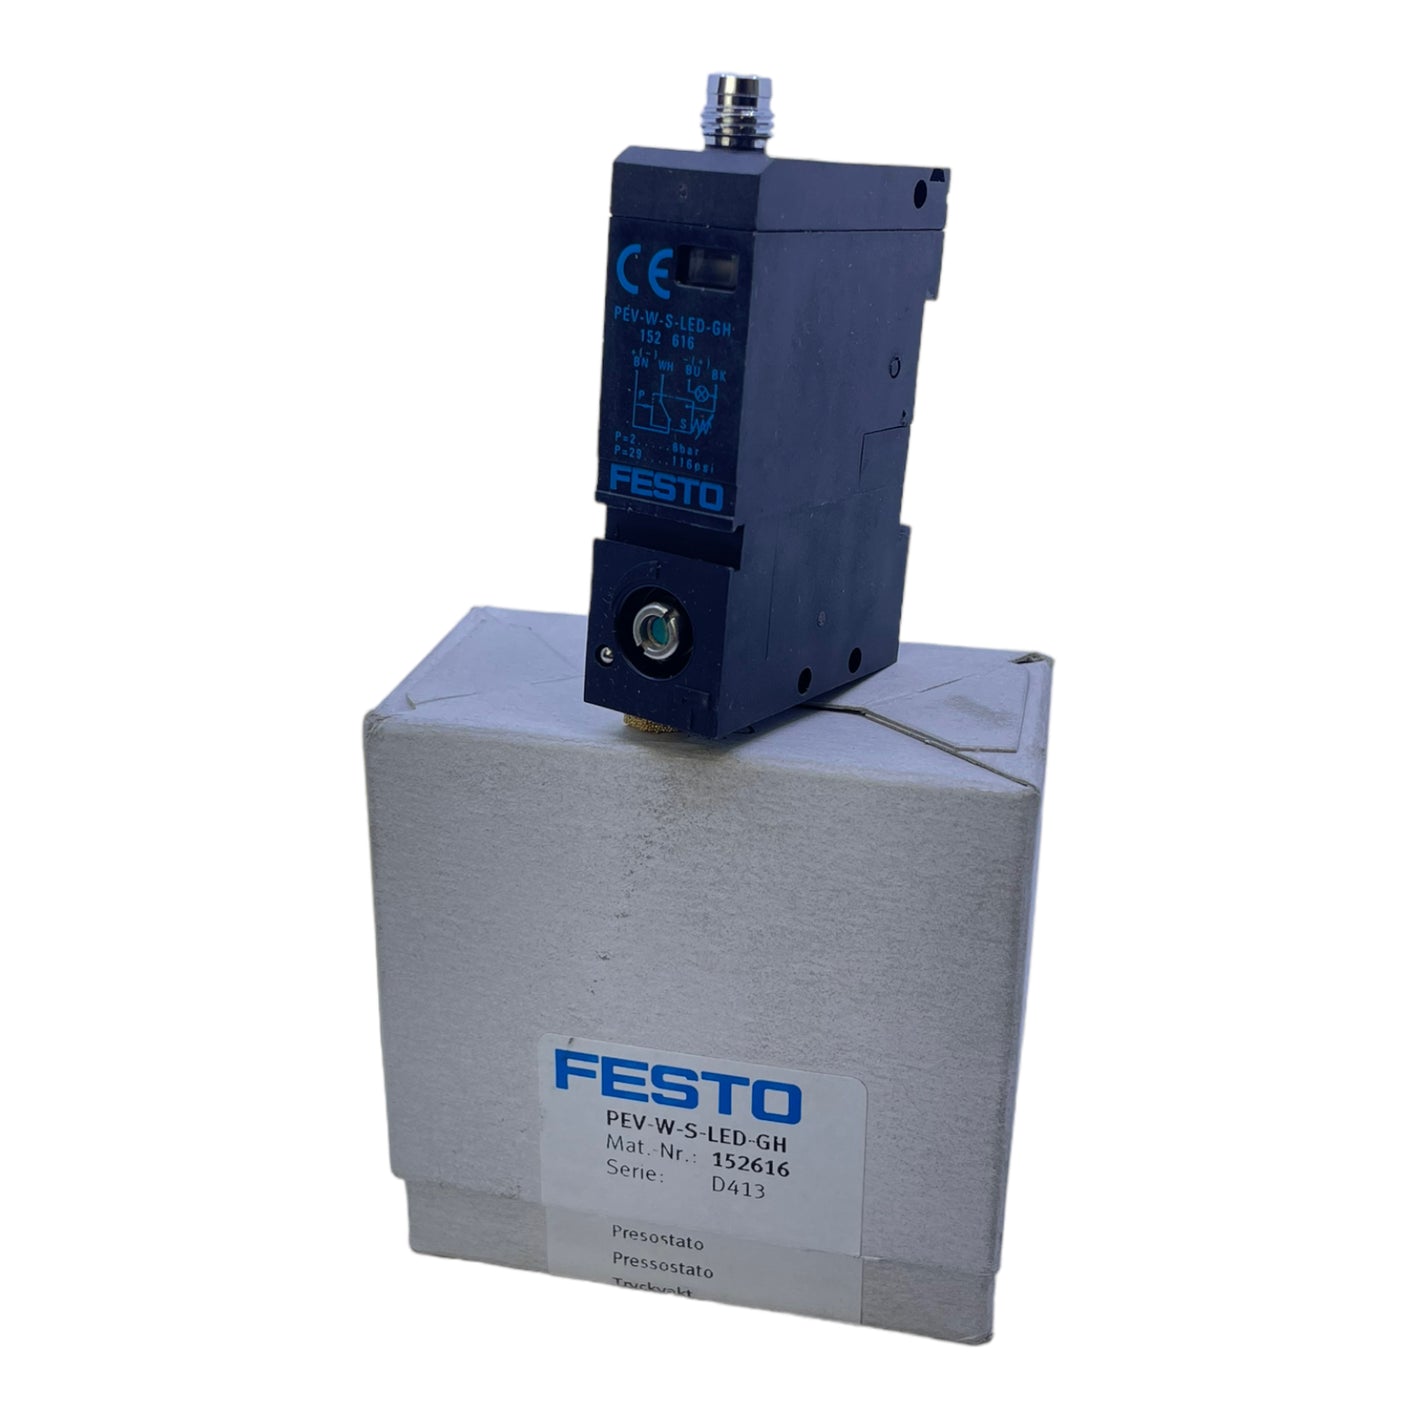 Festo PEV-W-S-LED-GH Druckschalter 152616 mit Durchgangsbohrung Hutschiene